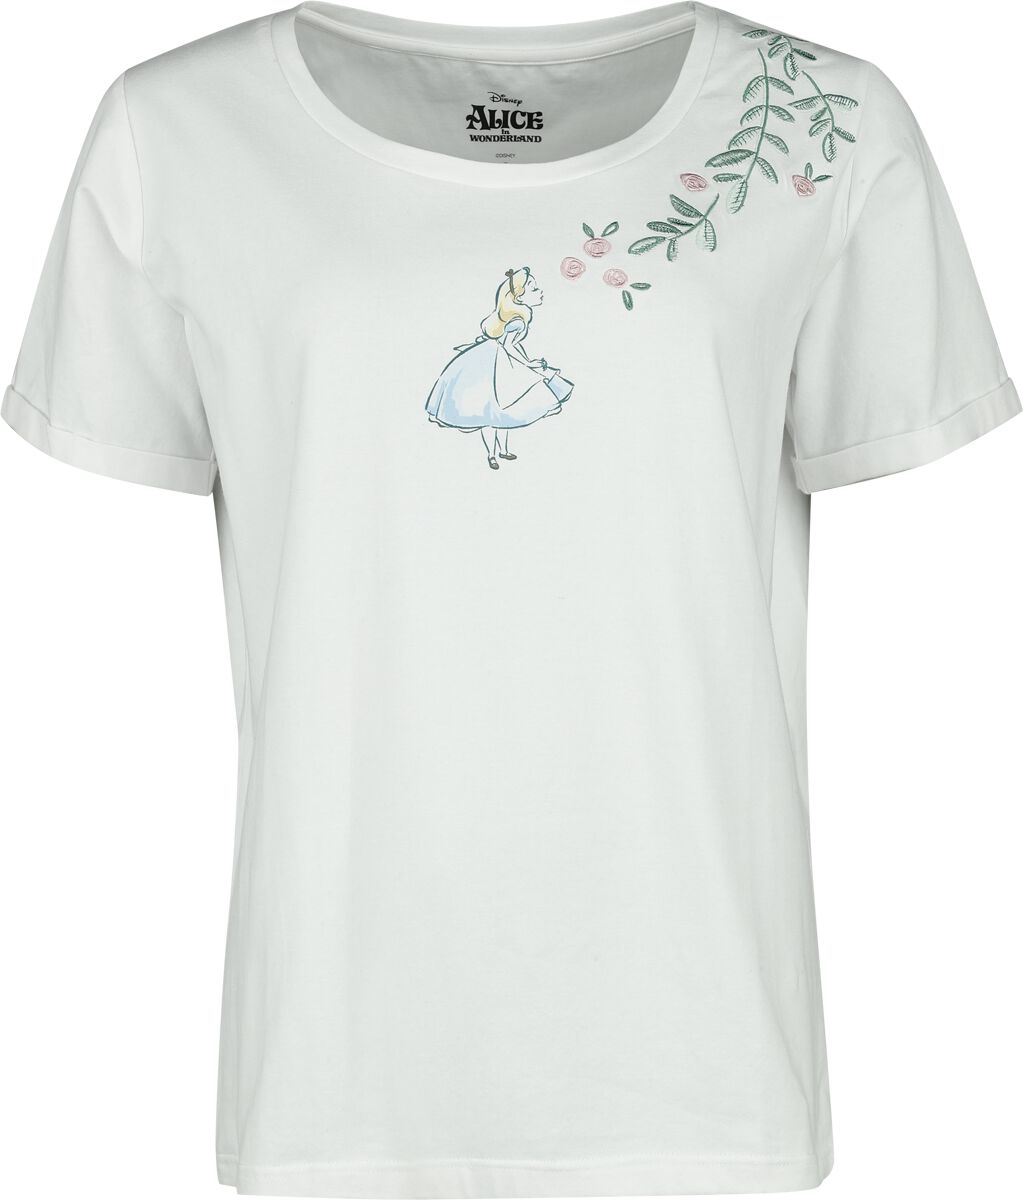 Alice im Wunderland - Disney T-Shirt - Alice With Roses - S bis XXL - für Damen - Größe M - weiß  - EMP exklusives Merchandise!